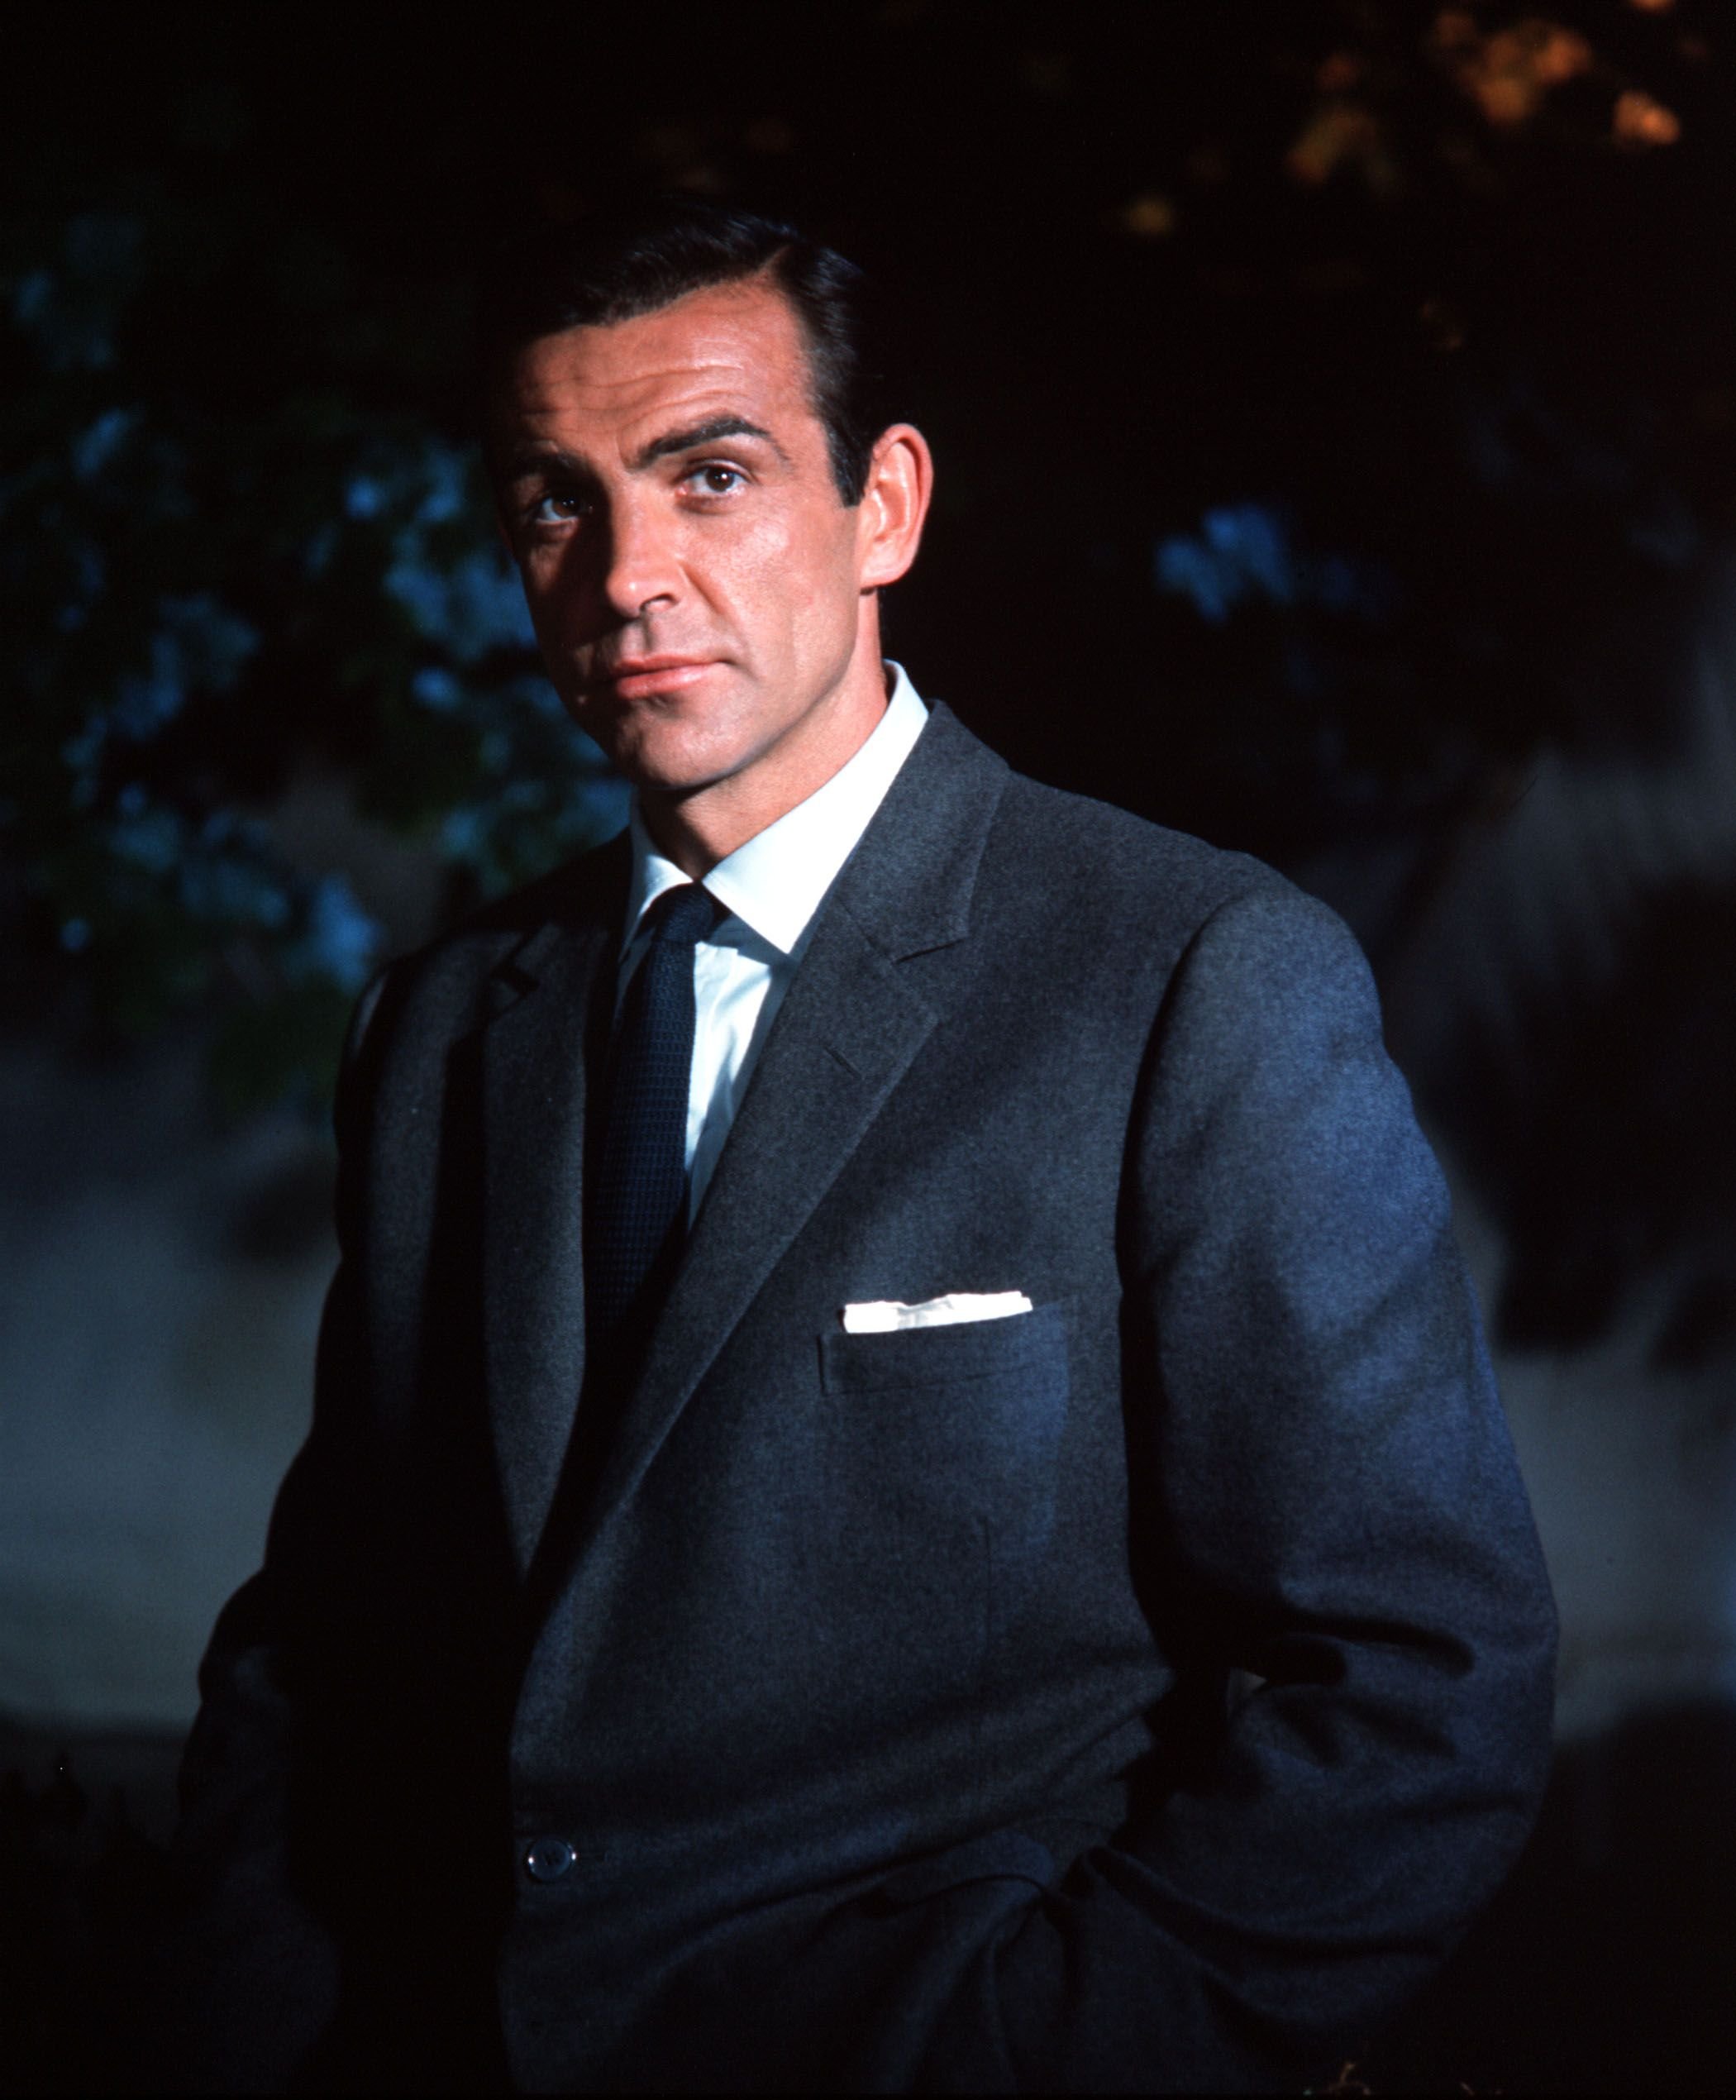 Der schottische Schauspieler Sean Connery in der Rolle des James Bond in dem Film "Dr. No" in England, 1962 | Quelle: Popperfoto via Getty Images